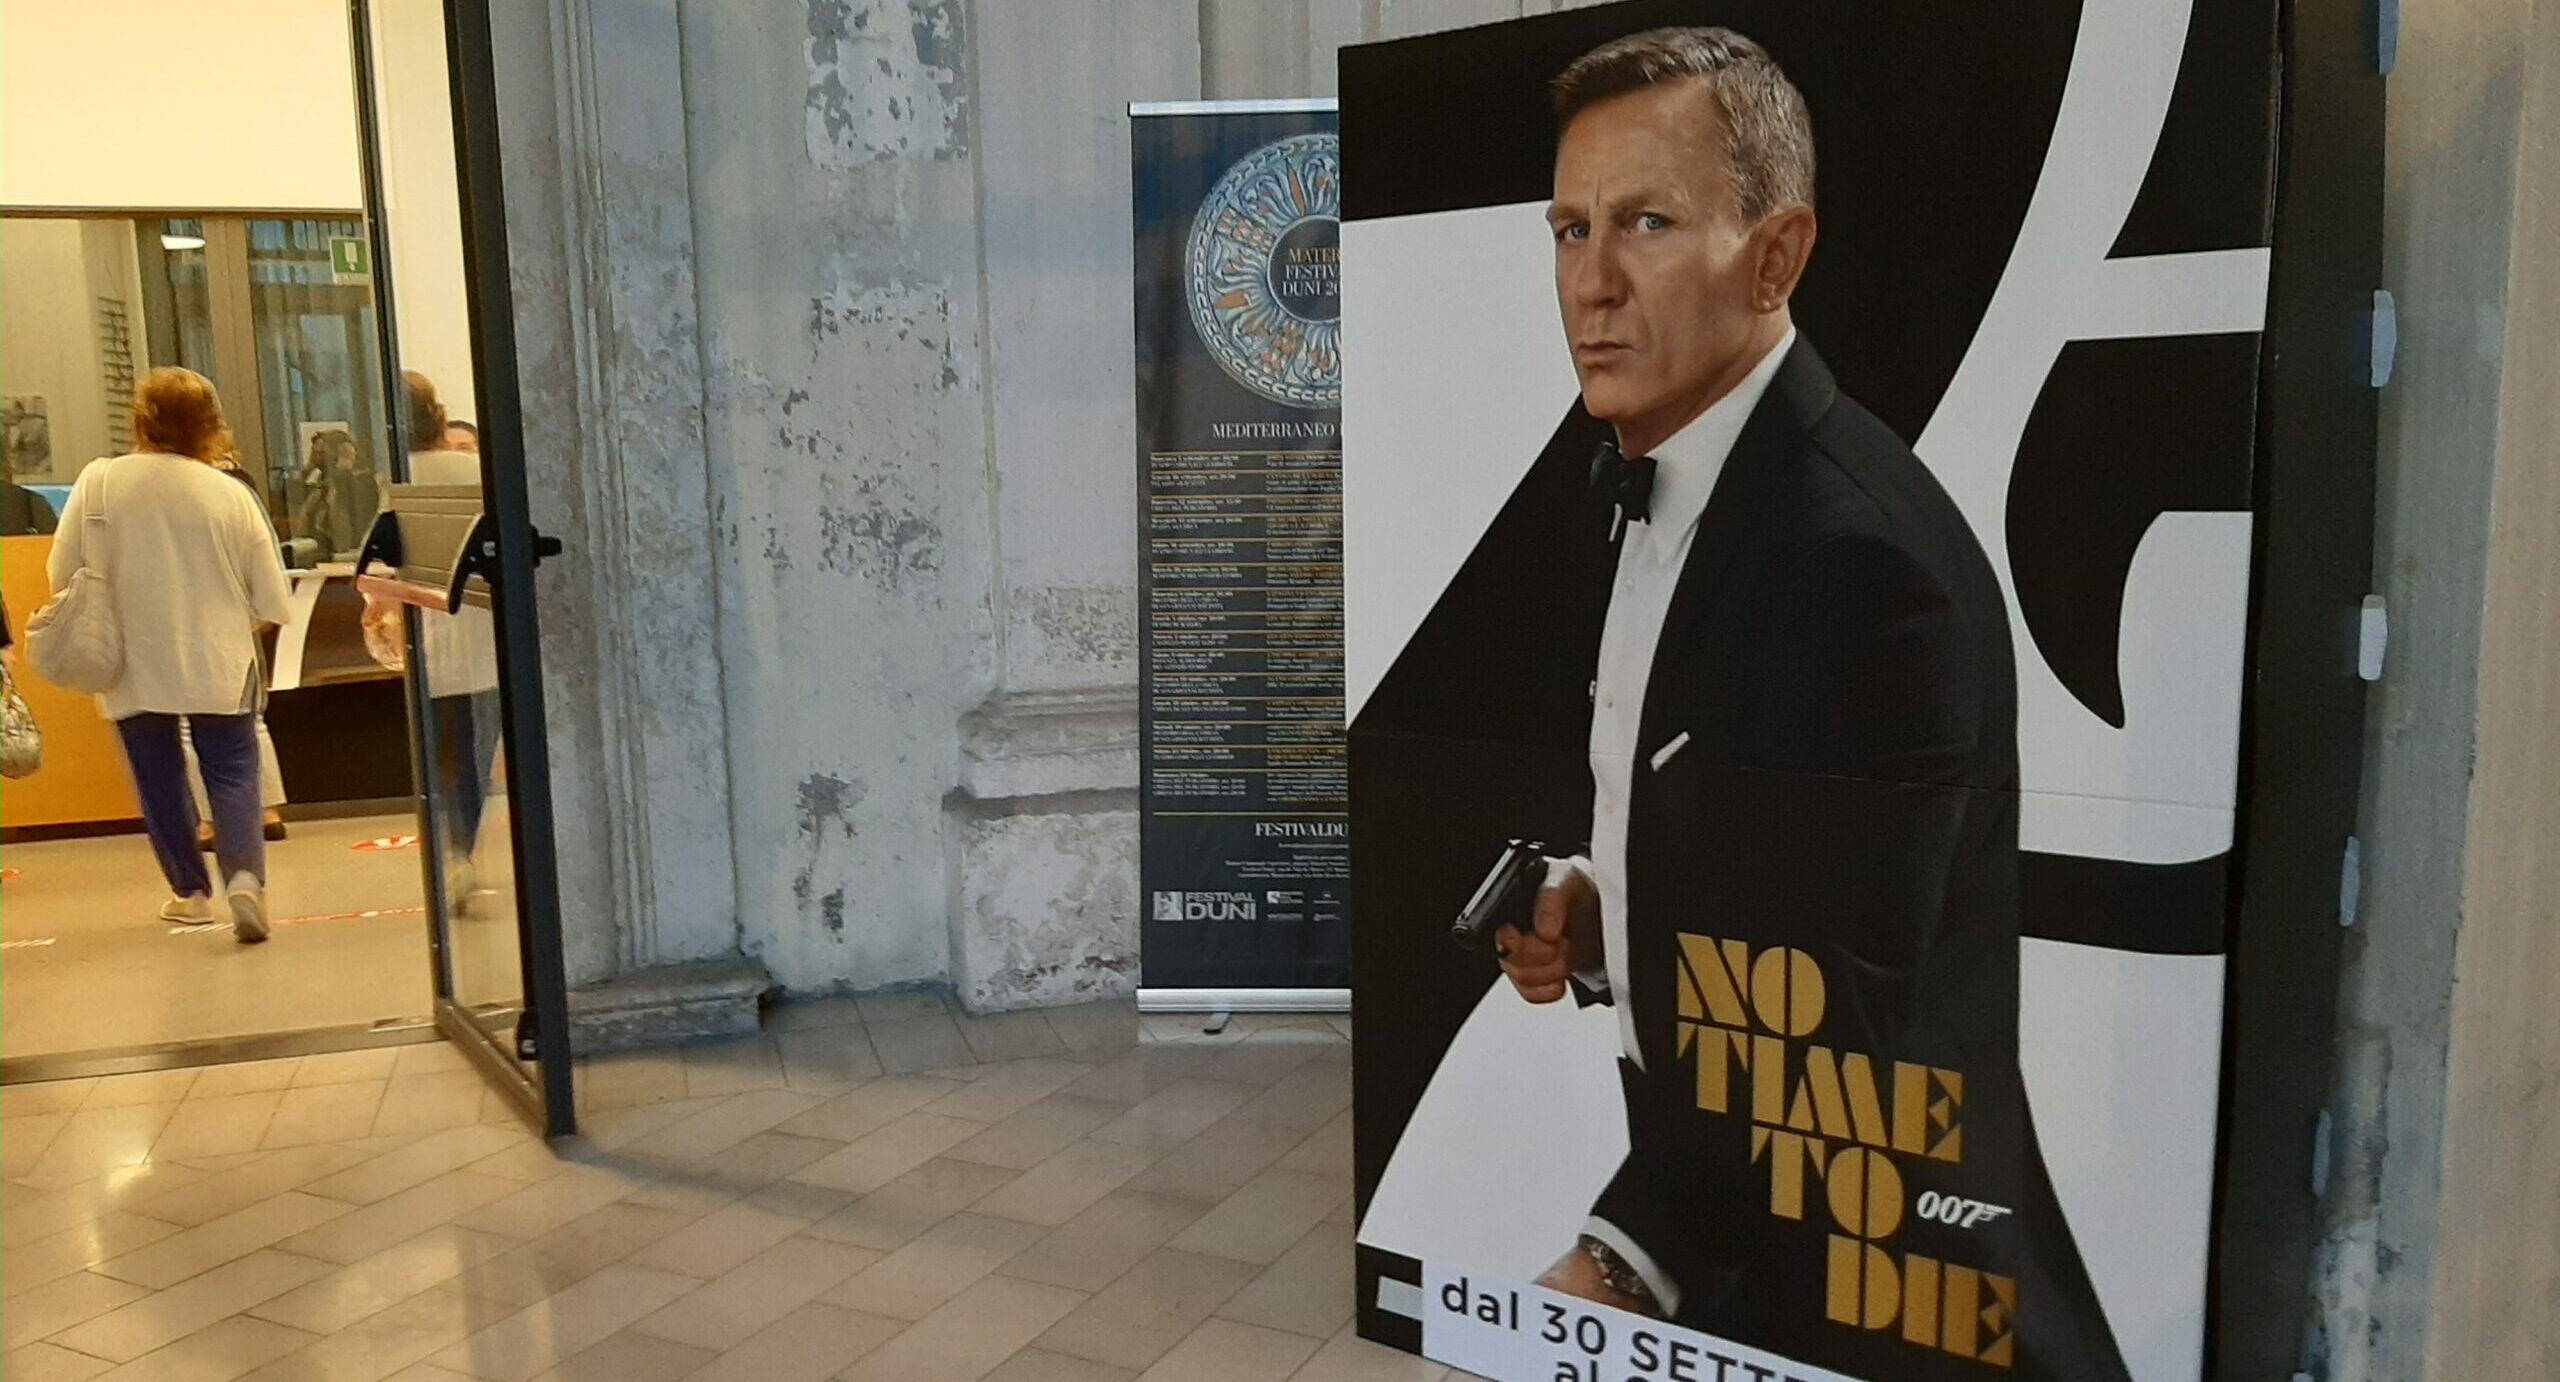 È il giorno di 007: video messaggio di Daniel Craig per la proiezione speciale a Matera